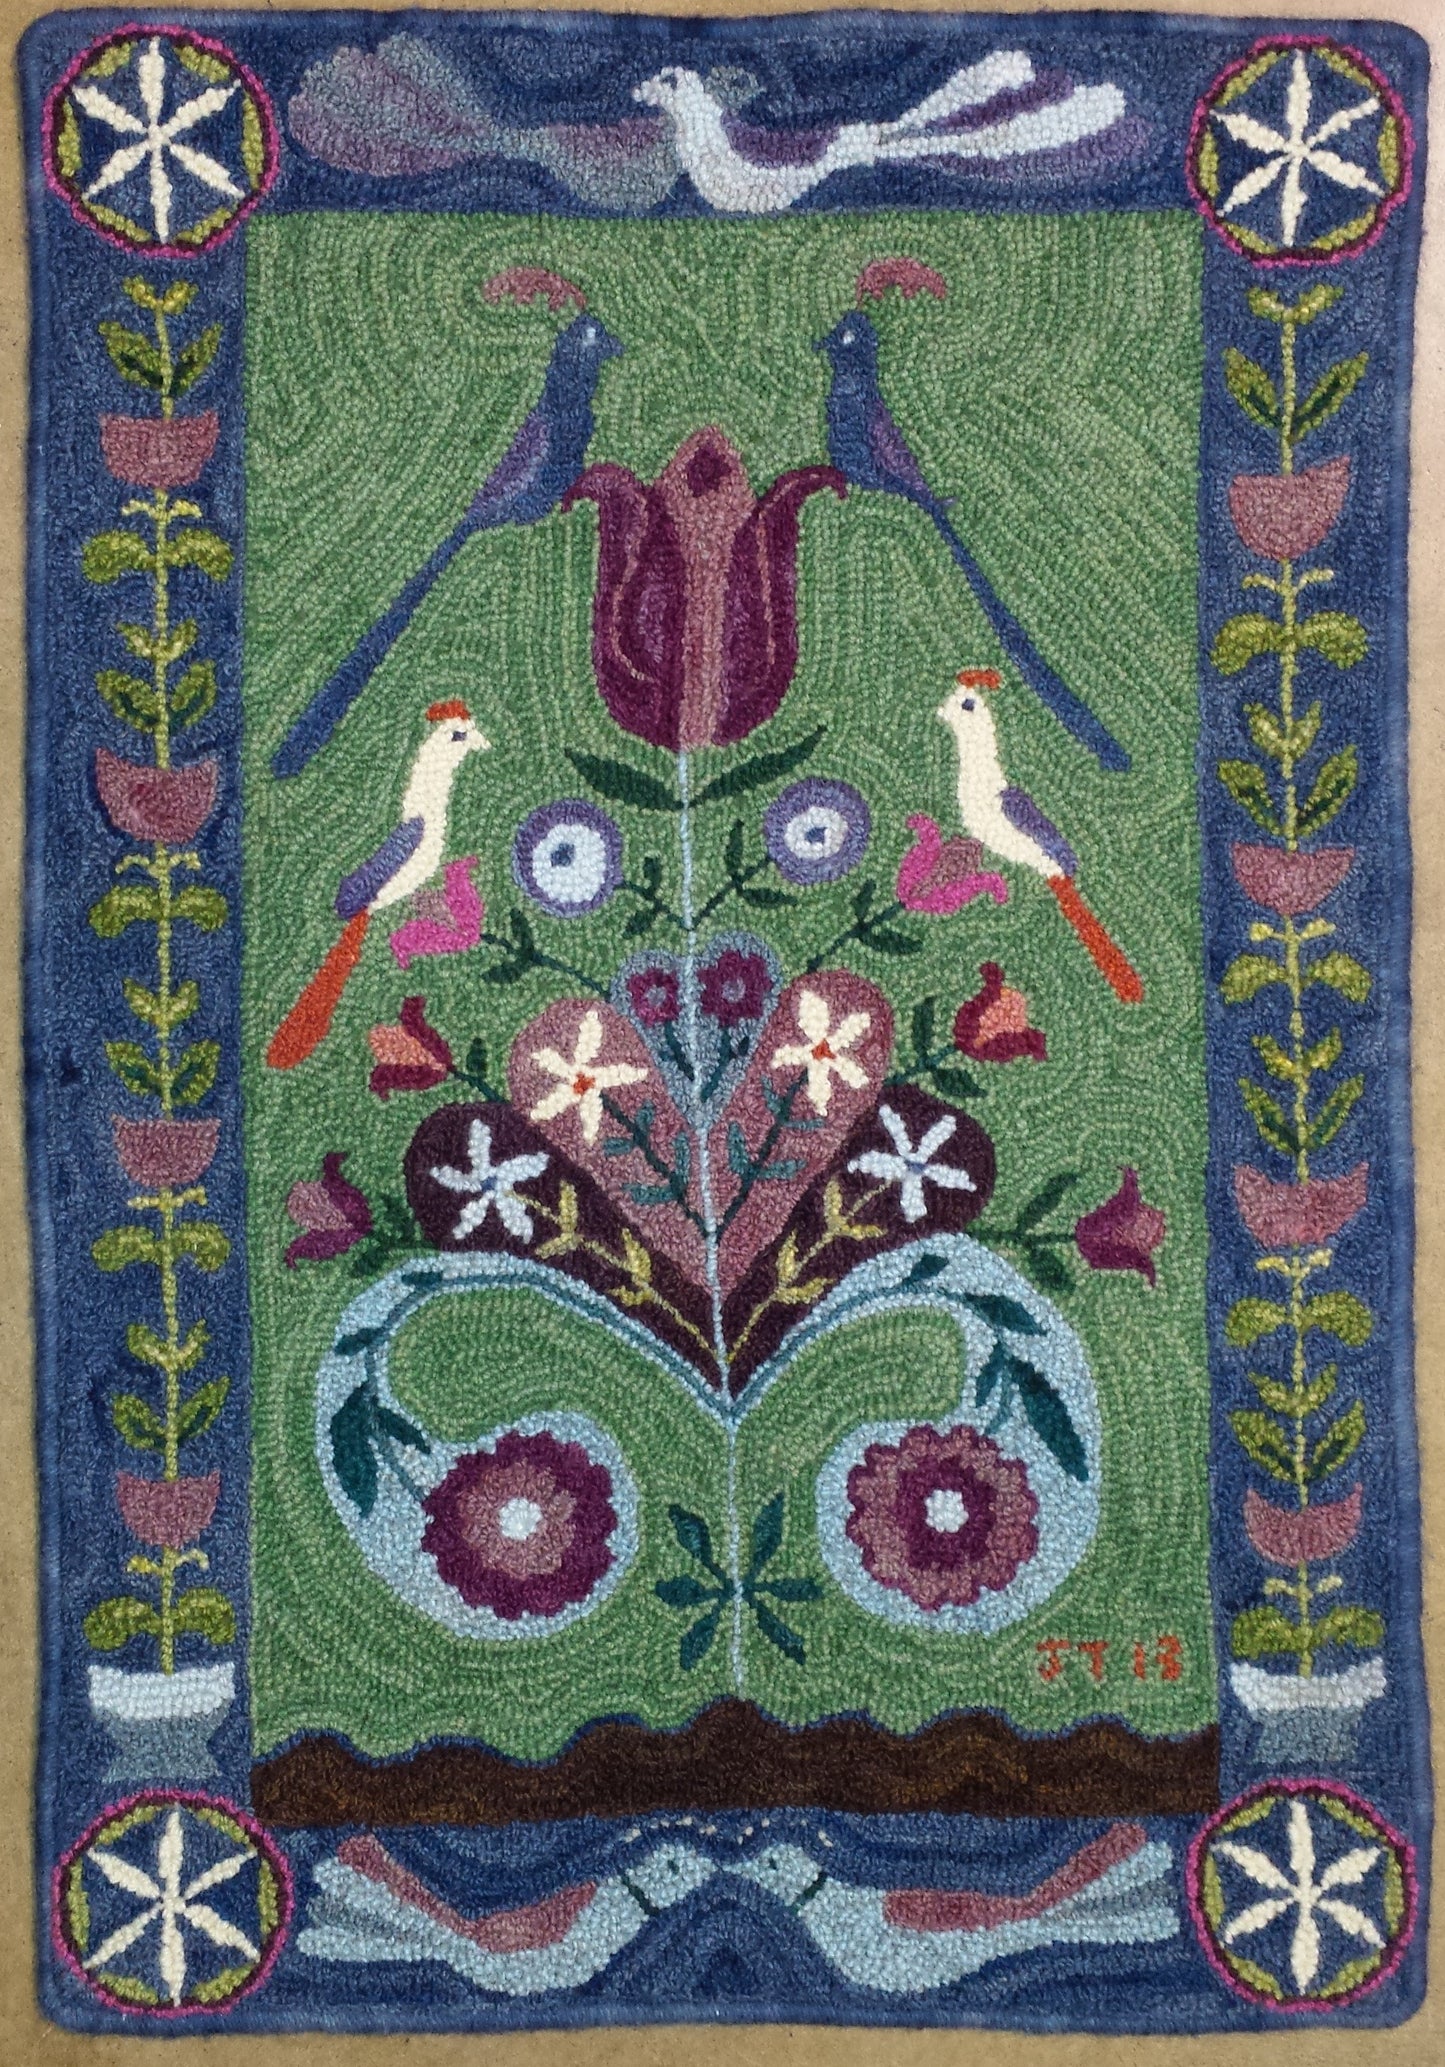 Lovebirds Pattern on linen, 21.5"x30"